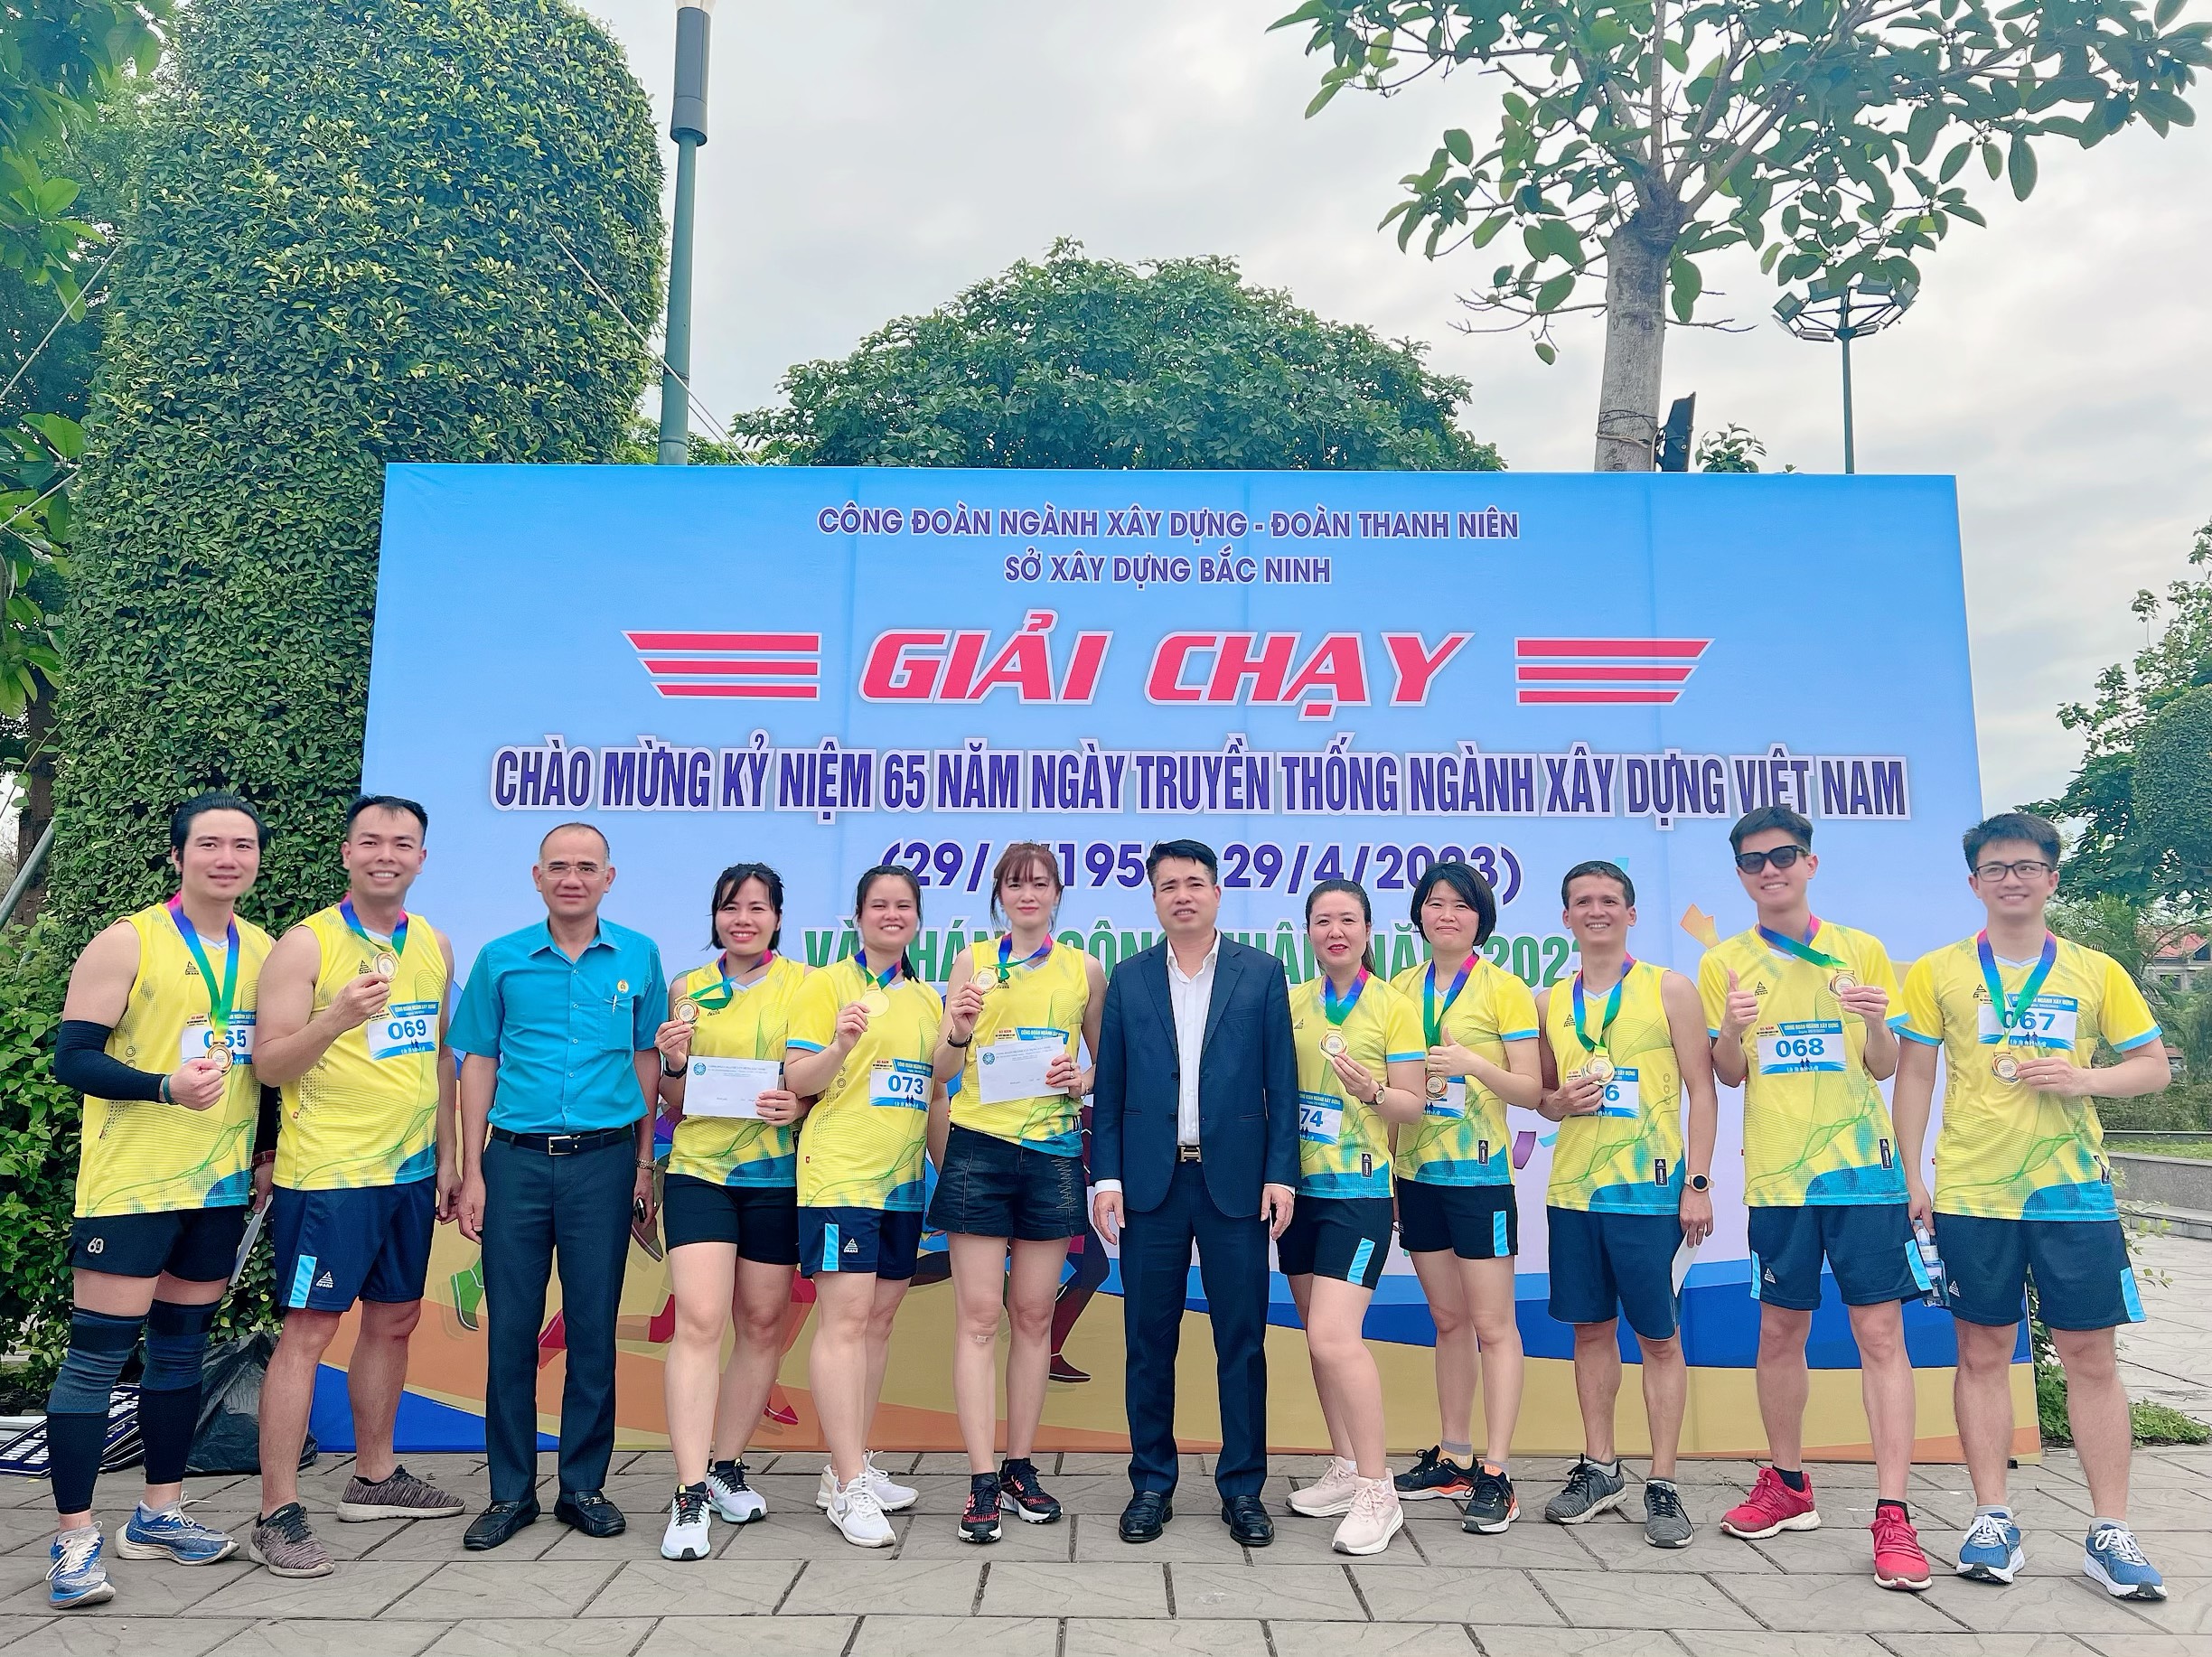 Giải thể thao chào mừng 65 năm ngày truyền thống ngành xây dựng Việt Nam